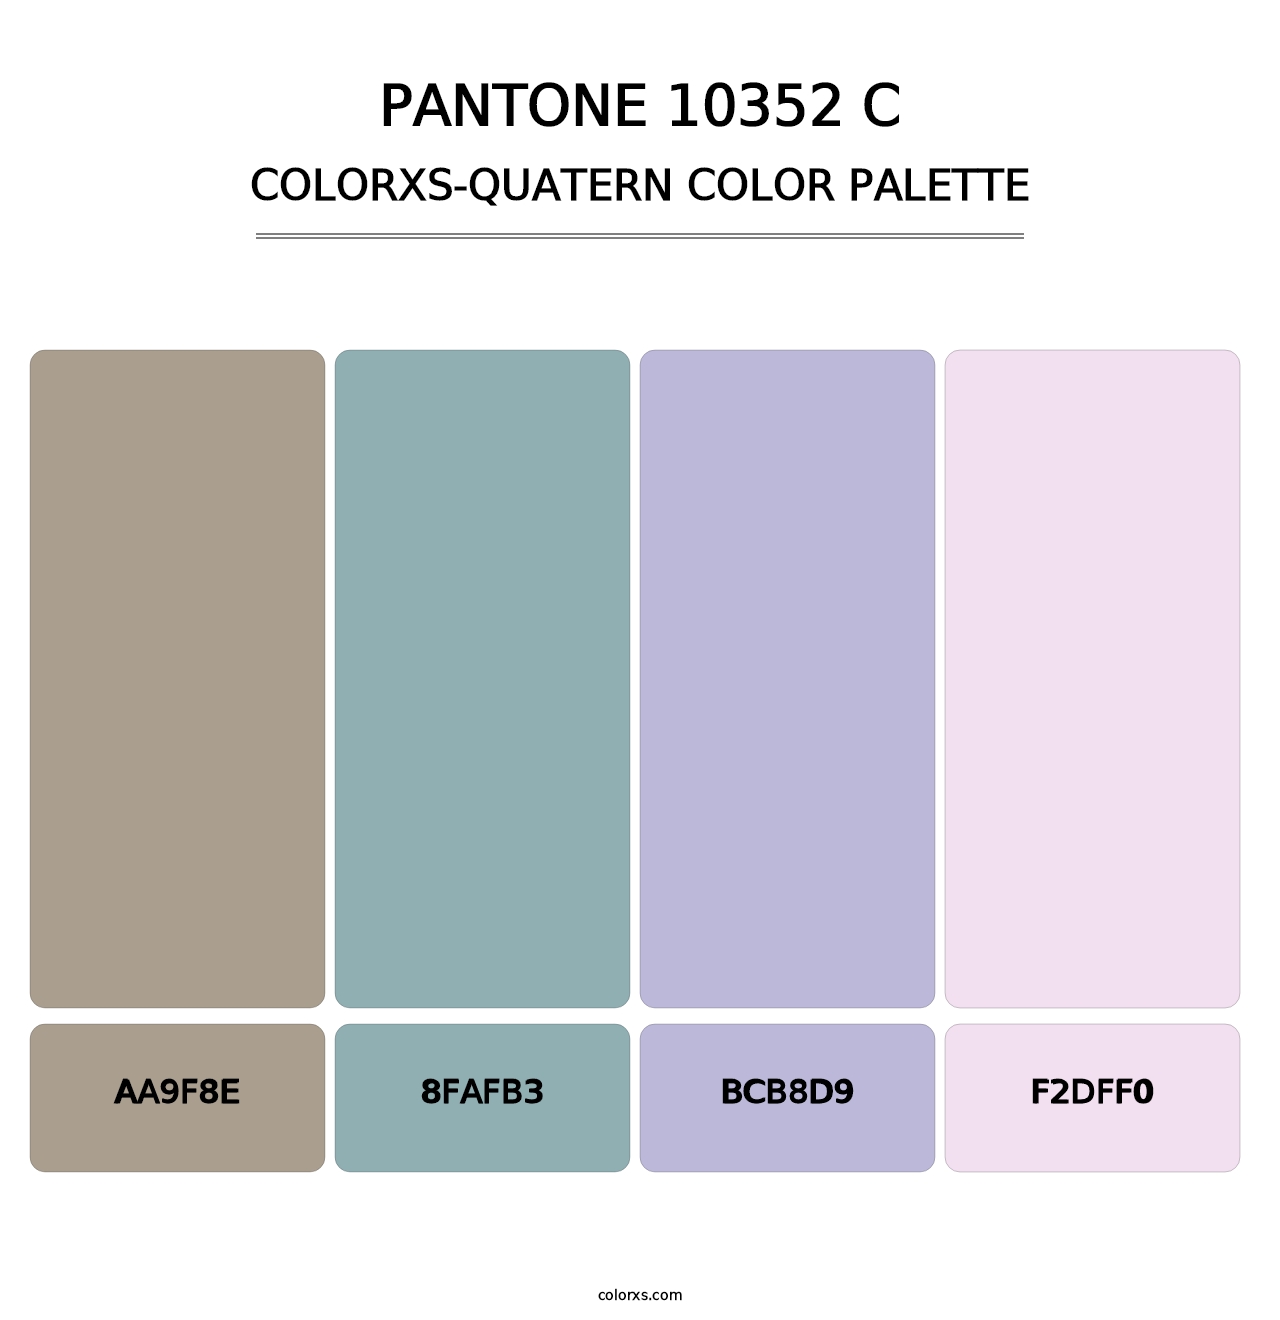 PANTONE 10352 C - Colorxs Quatern Palette